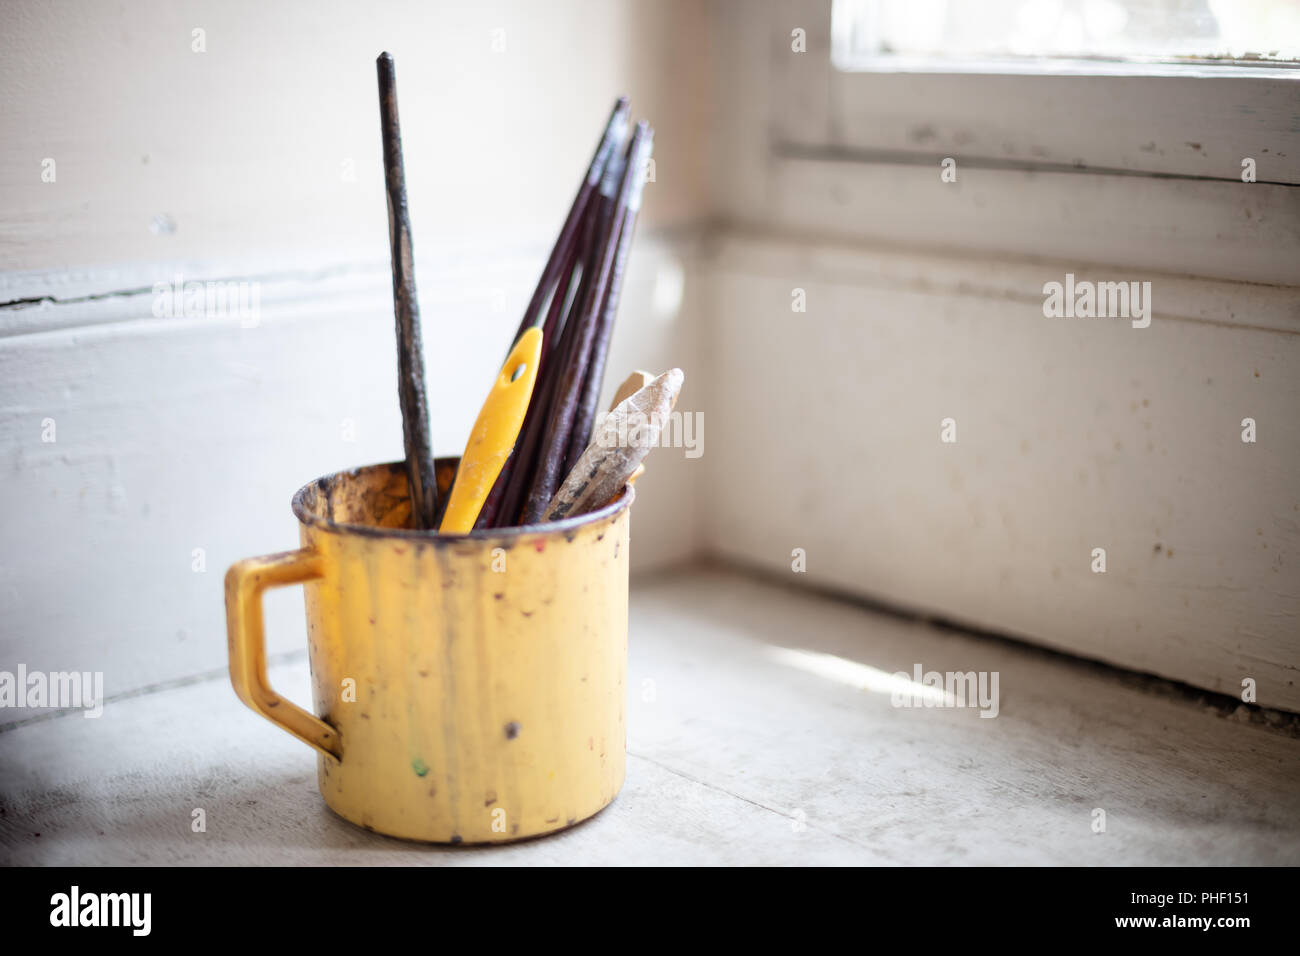 Piccolo secchio di plastica con utilizzato artista pennelli per dipingere su una mensola ad angolo al di sotto di una finestra Foto Stock